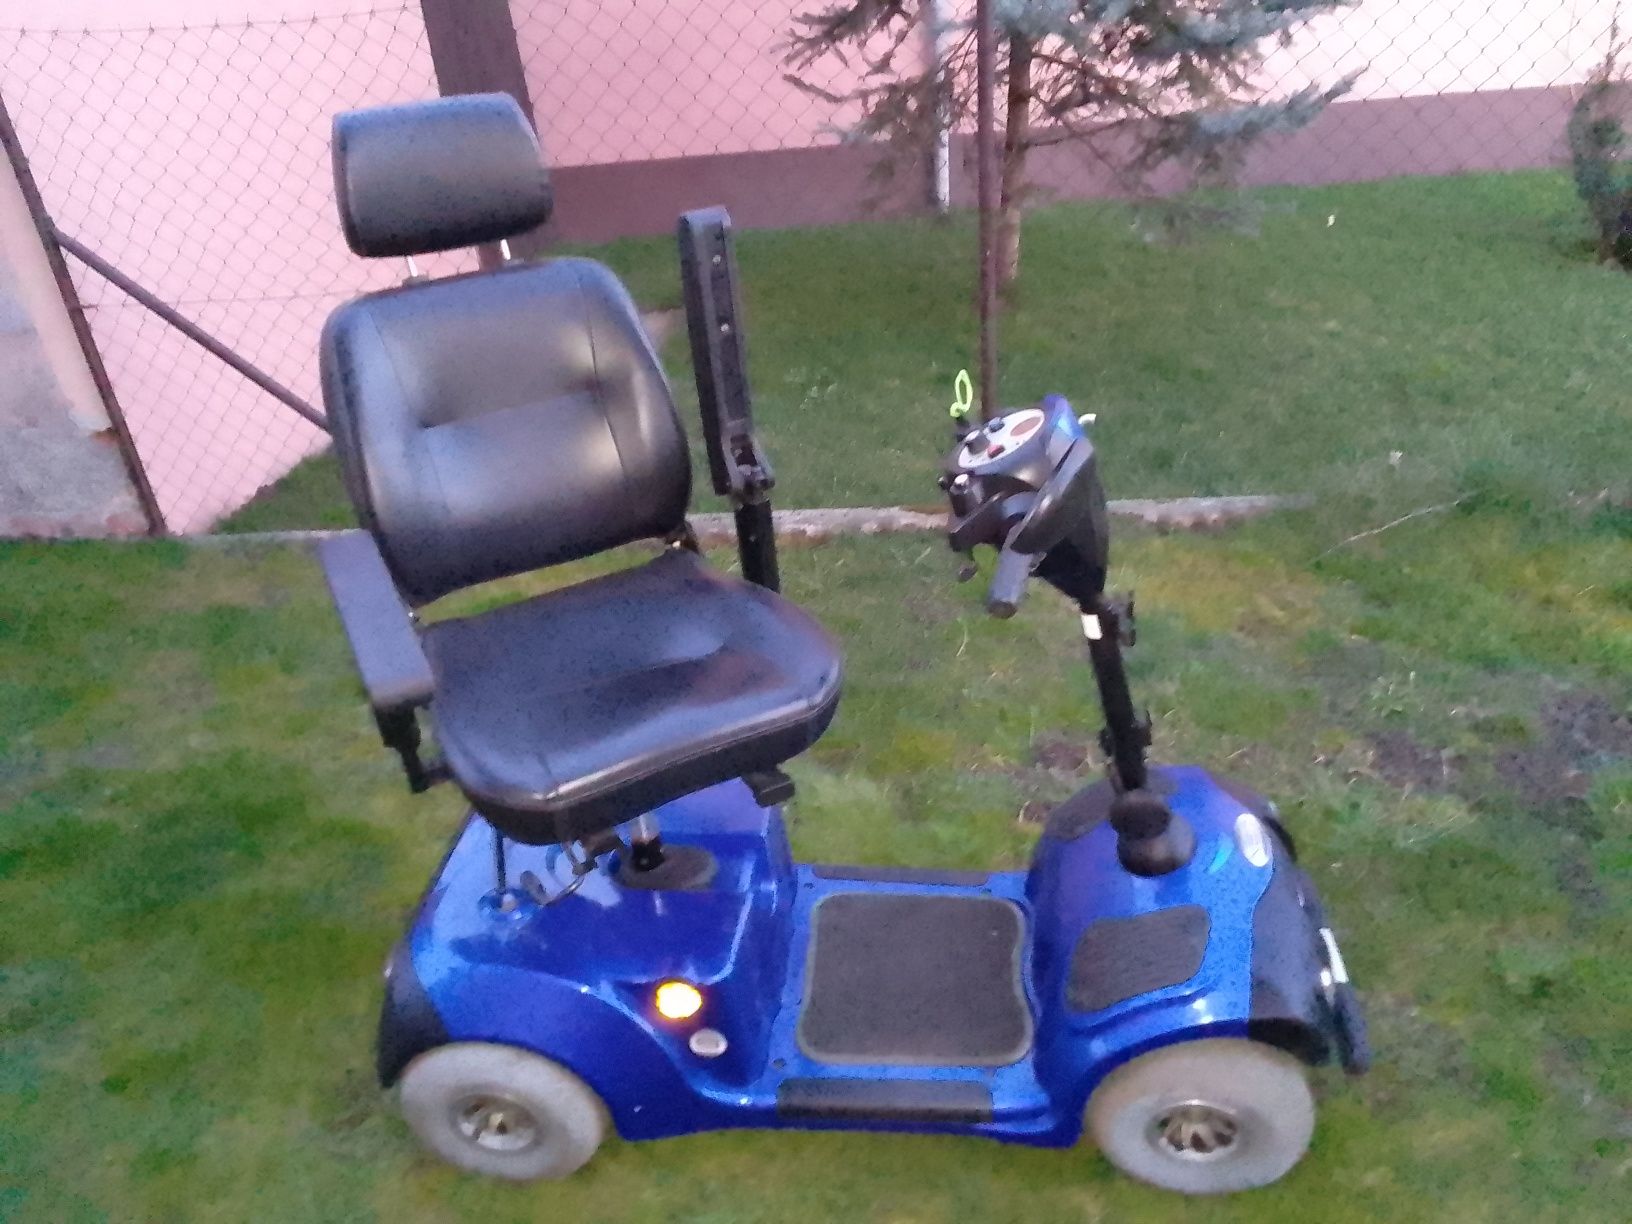 Skuter wózek inwalidzki elektryczny 2019 • Neo 8 • SZYBKI 2 prędkości